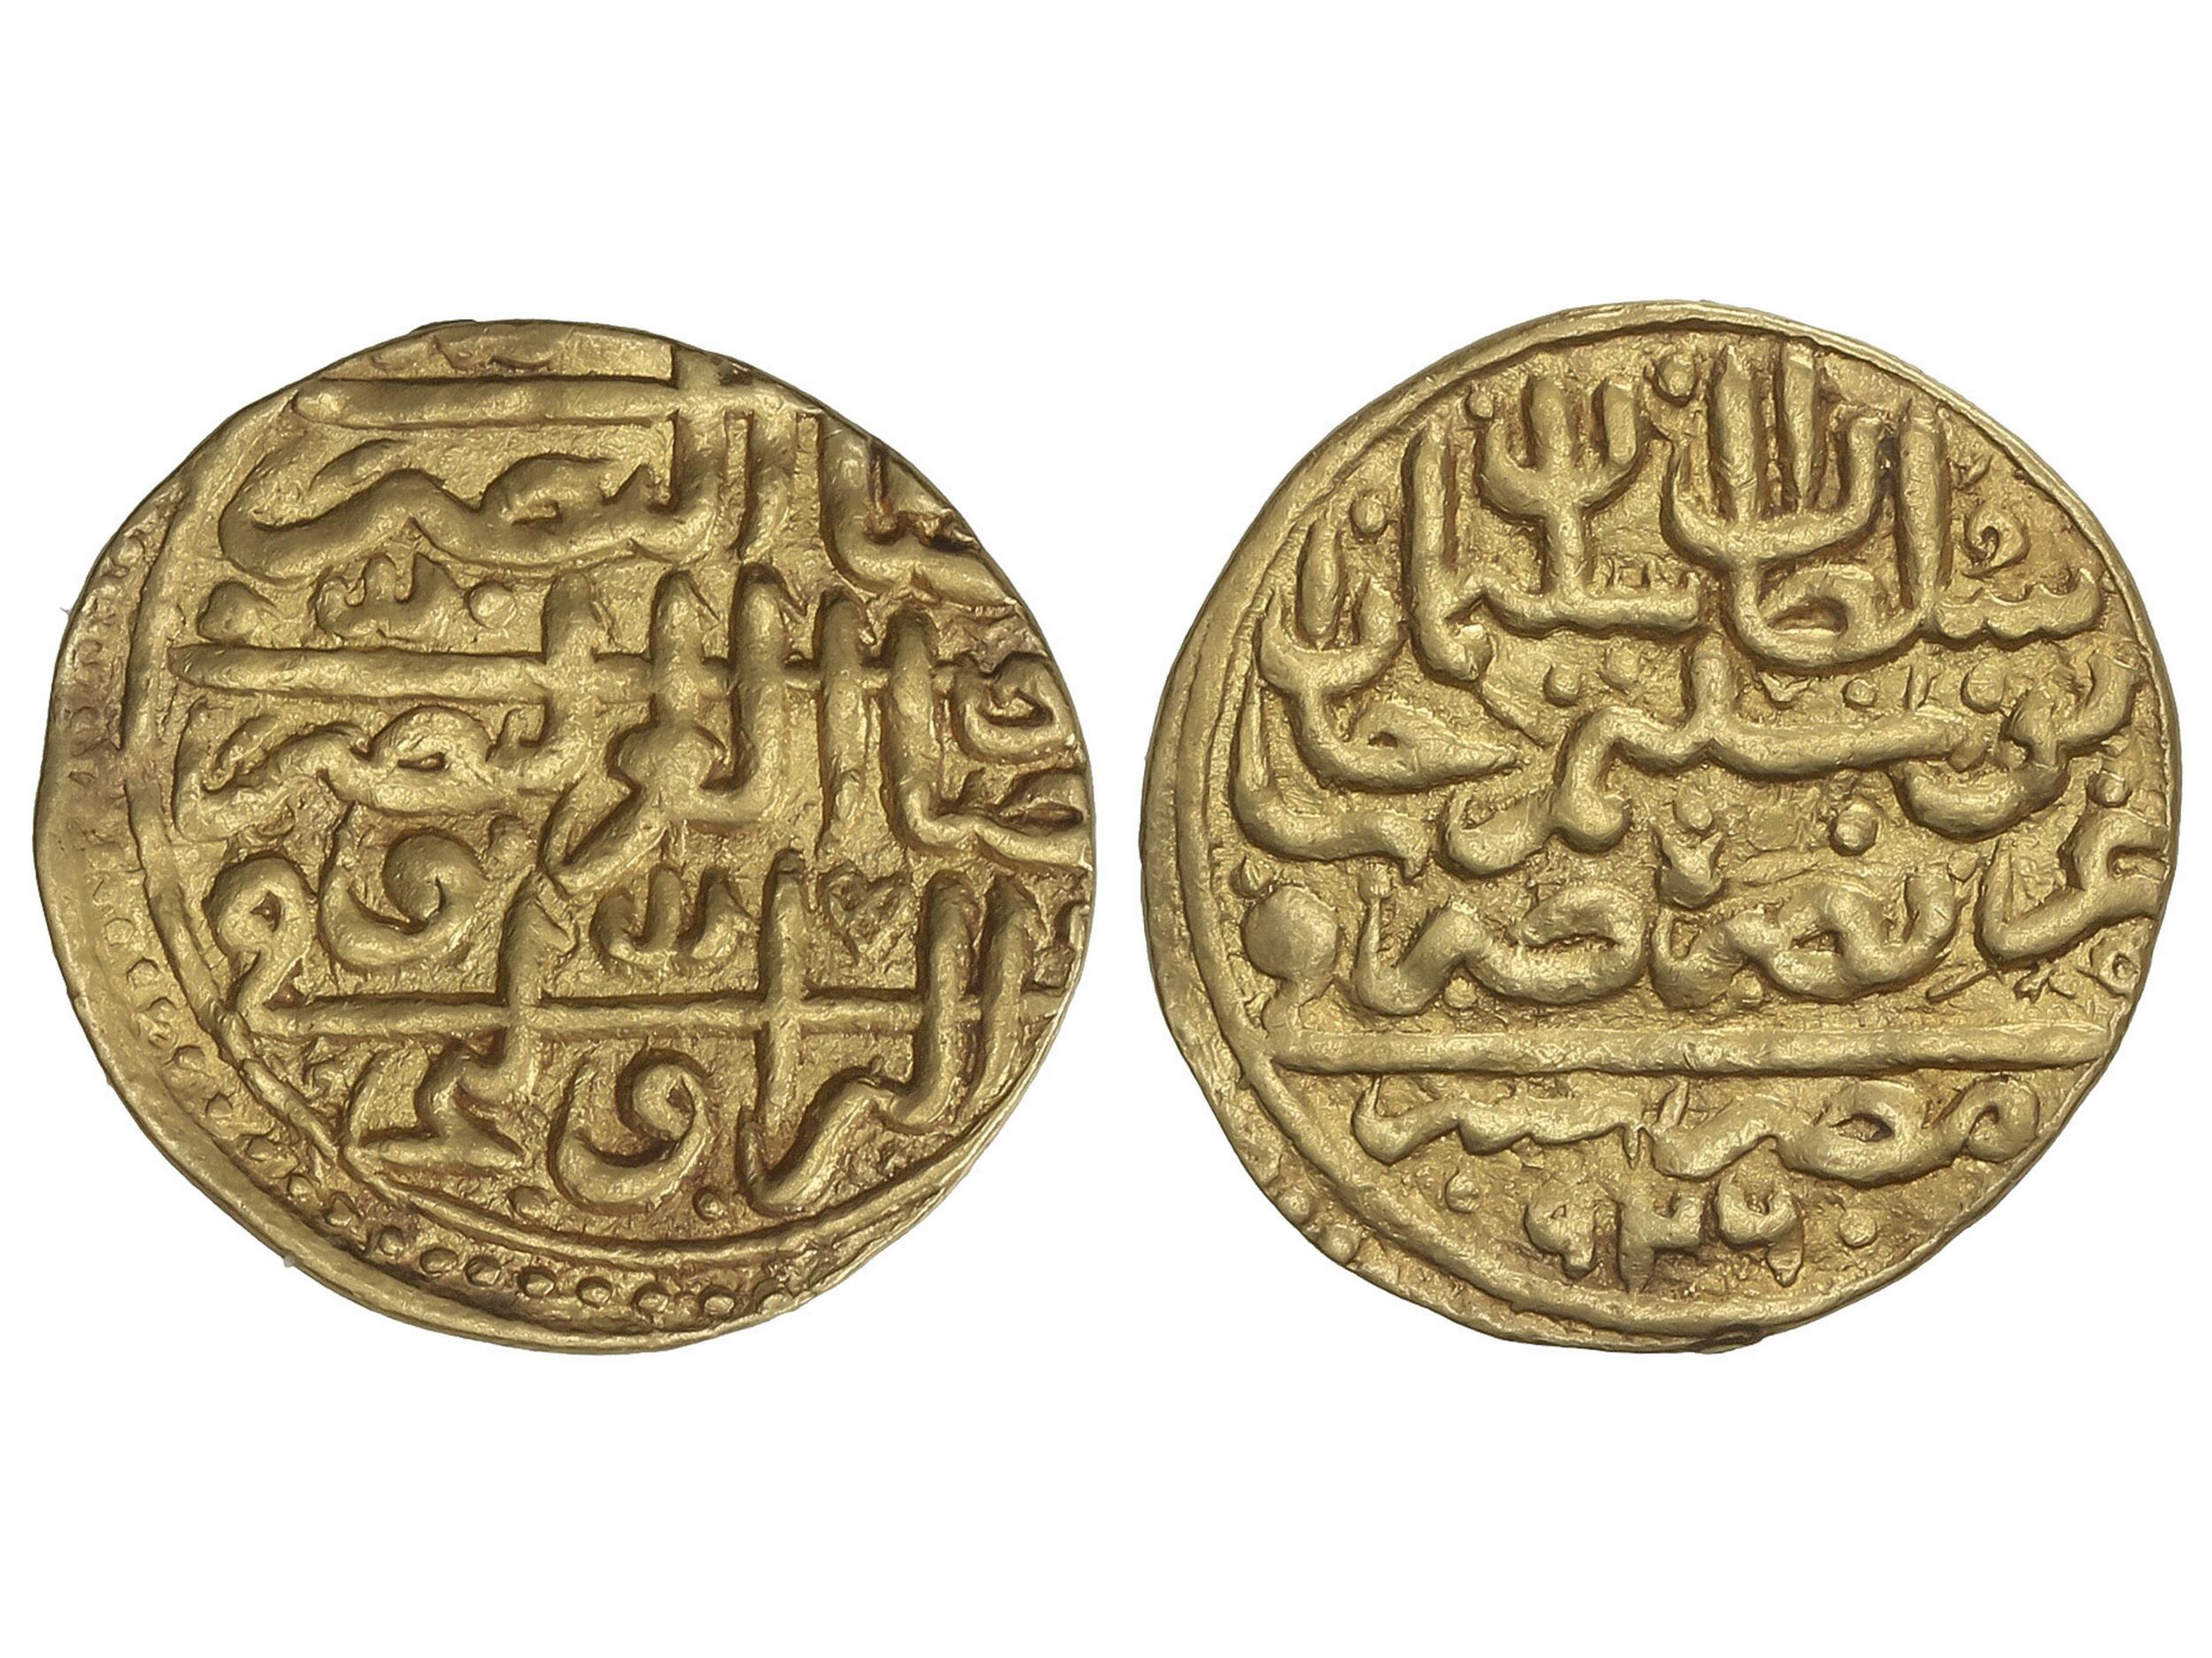 30.220: Islam, Empire Ottoman